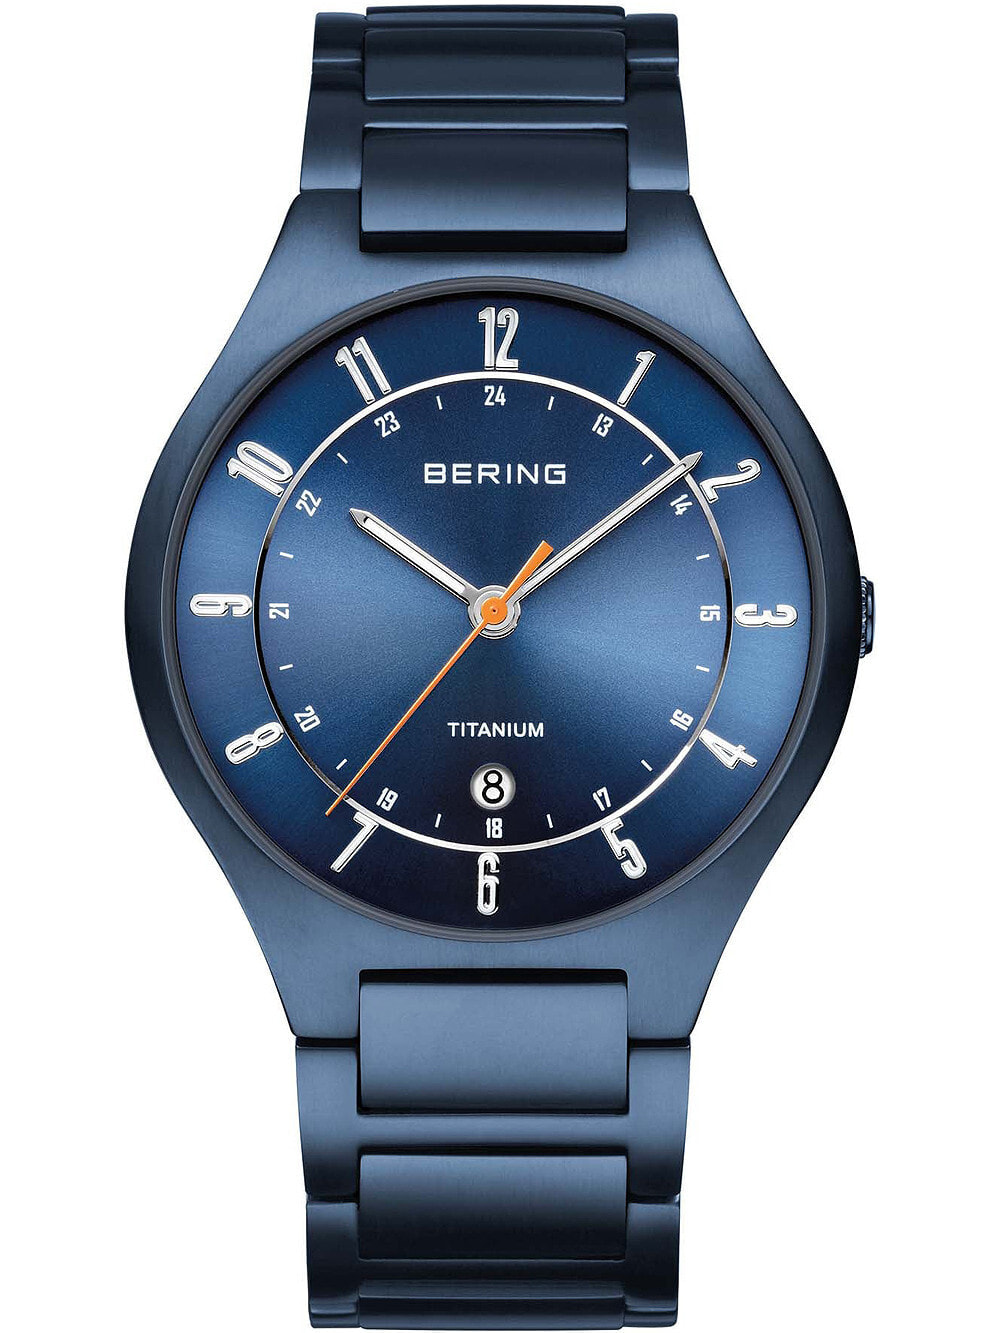 Мужские наручные часы с синим браслетом Bering 11739-797 Titanium mens 39mm 5ATM